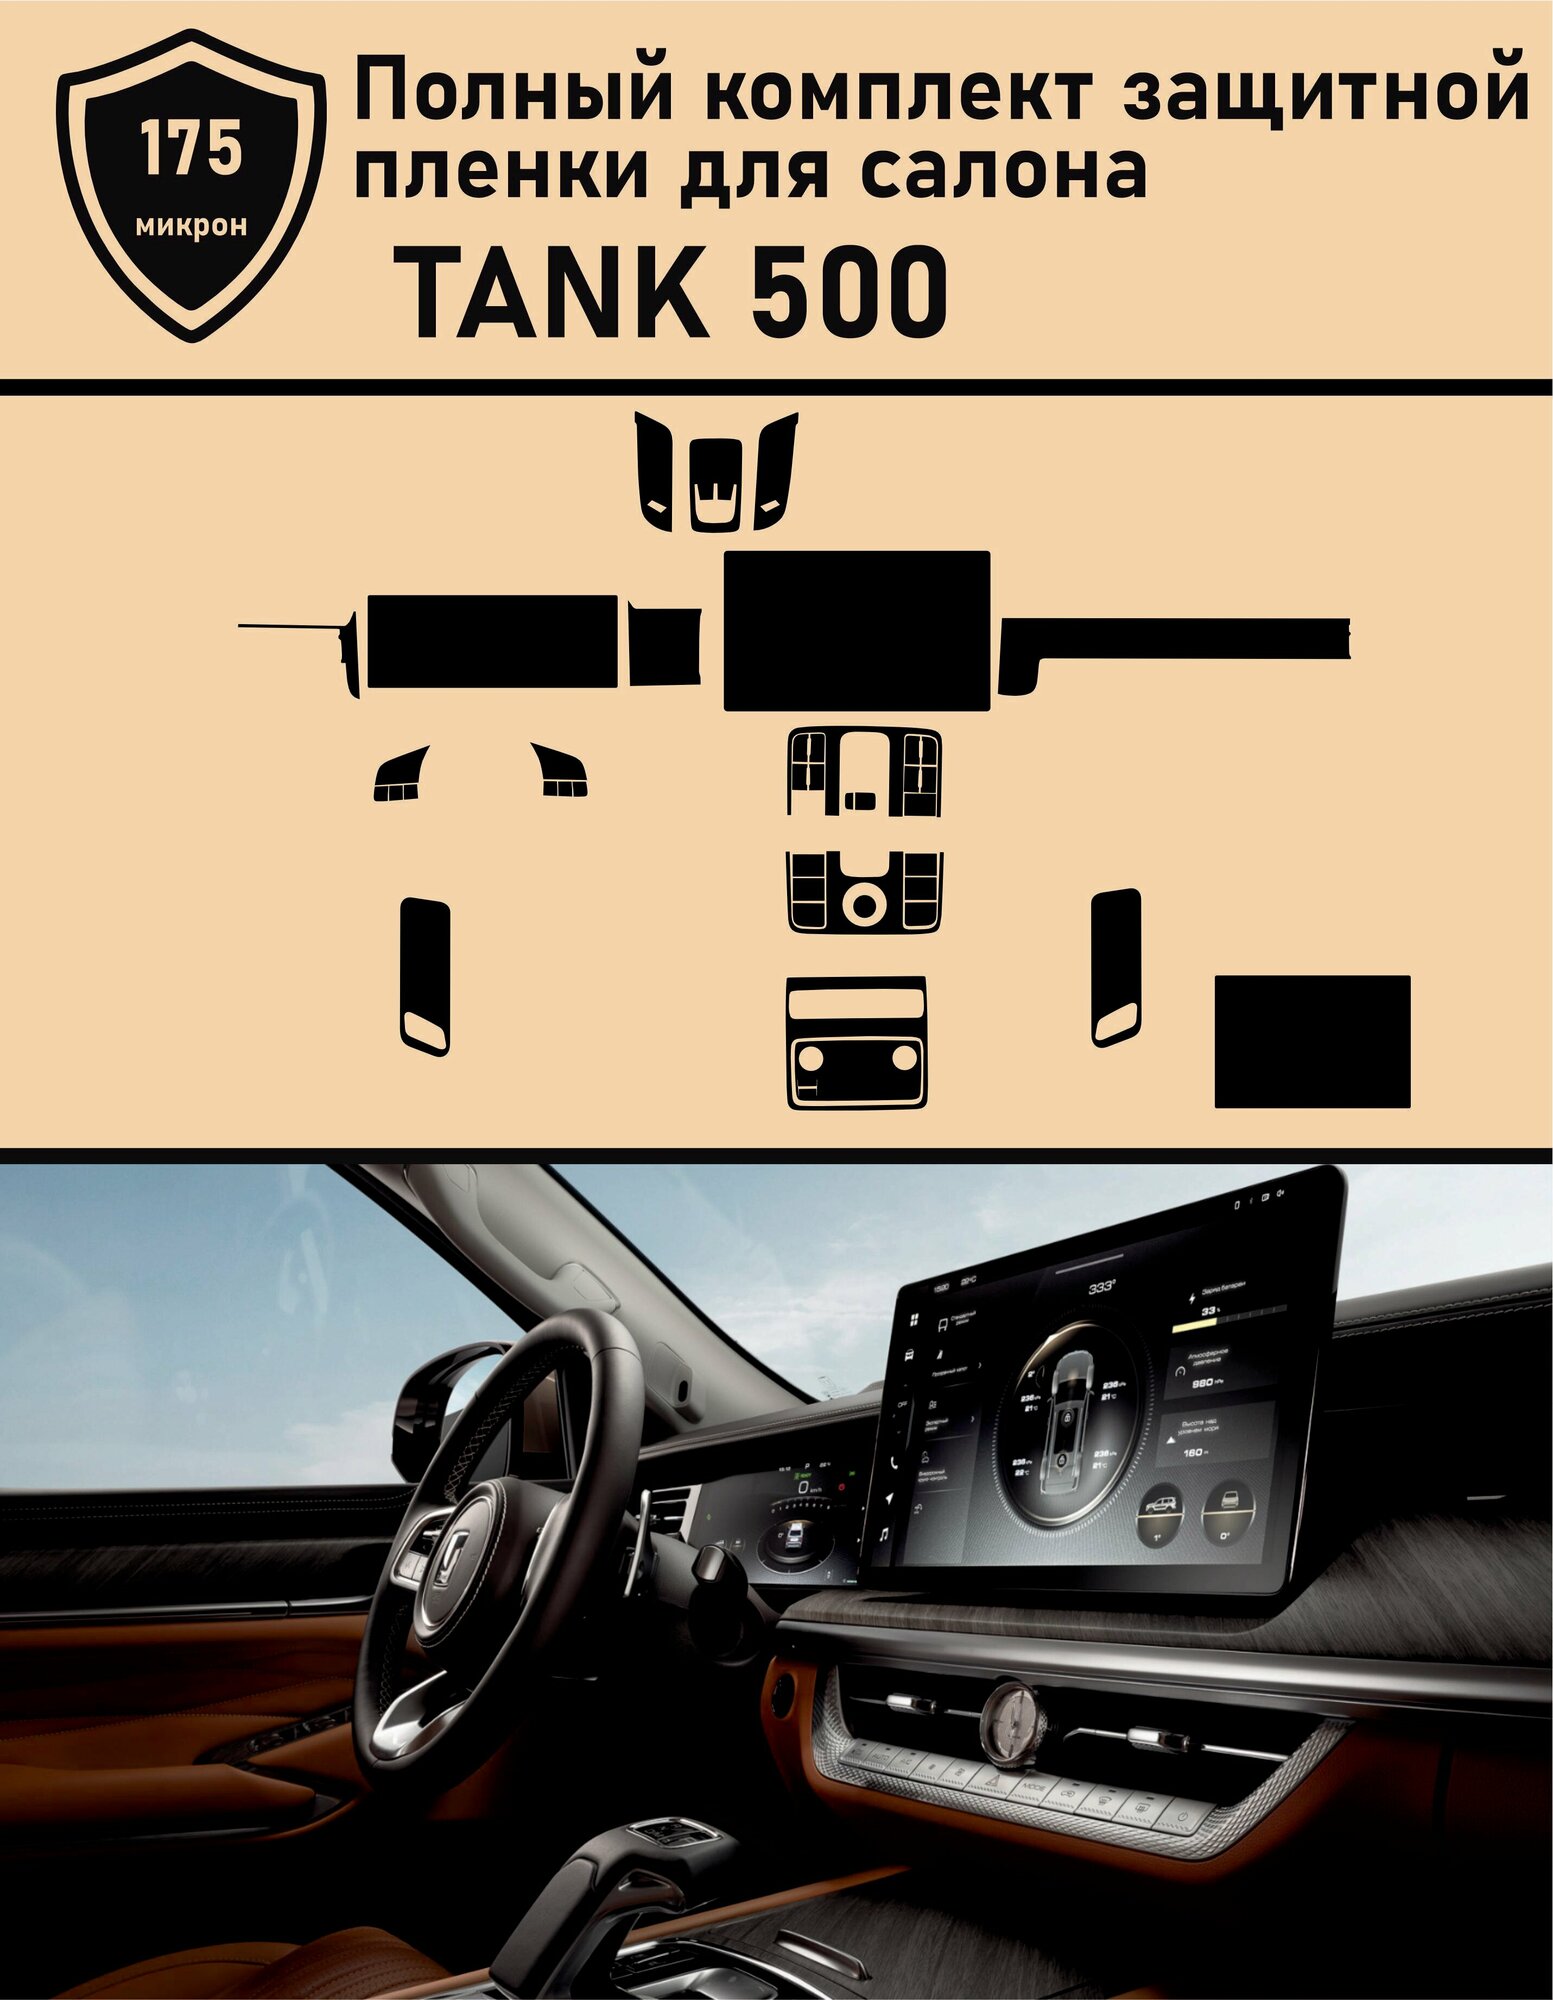 TANK 500/ Полный комплект защитной пленки для салона